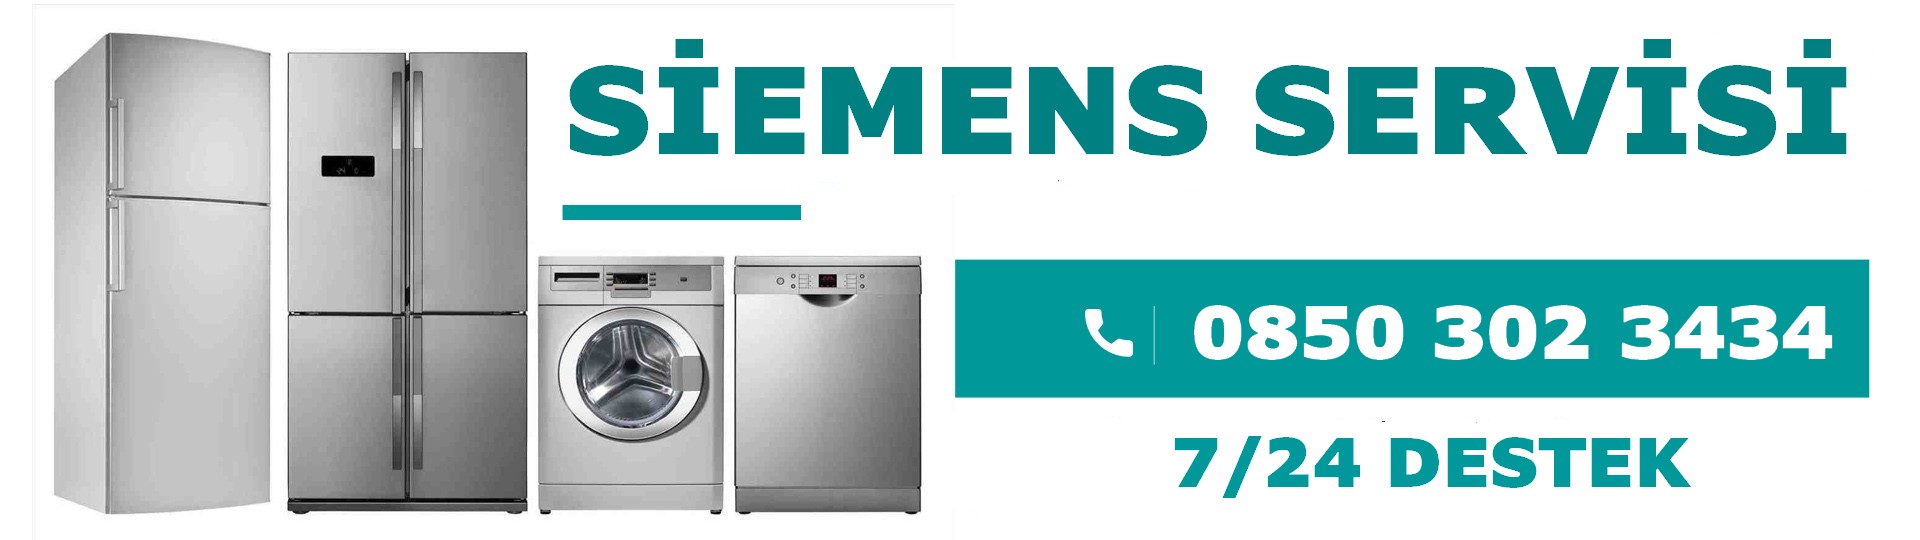 Demirci Siemens Servisi